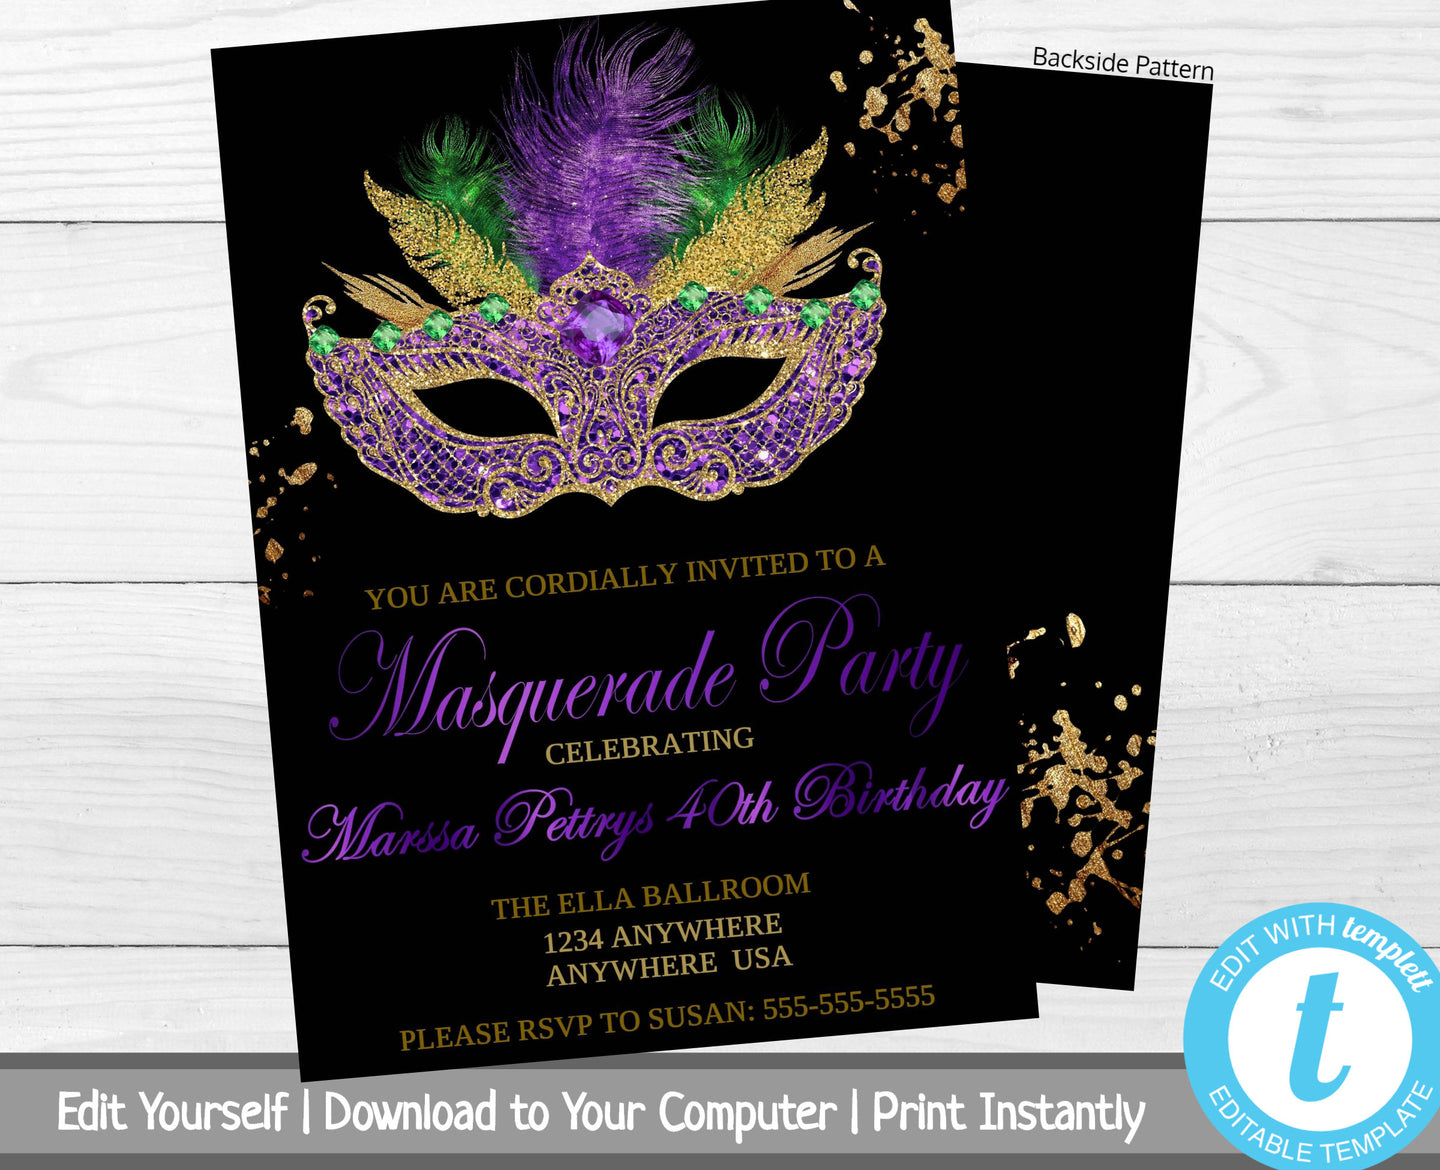 Masquerade Party Invitation, Birthday Party Invite, Masquerade Ball Invitation, Mardi Gras, Milestone Birthday Invitation, 30th, 40th, 50th